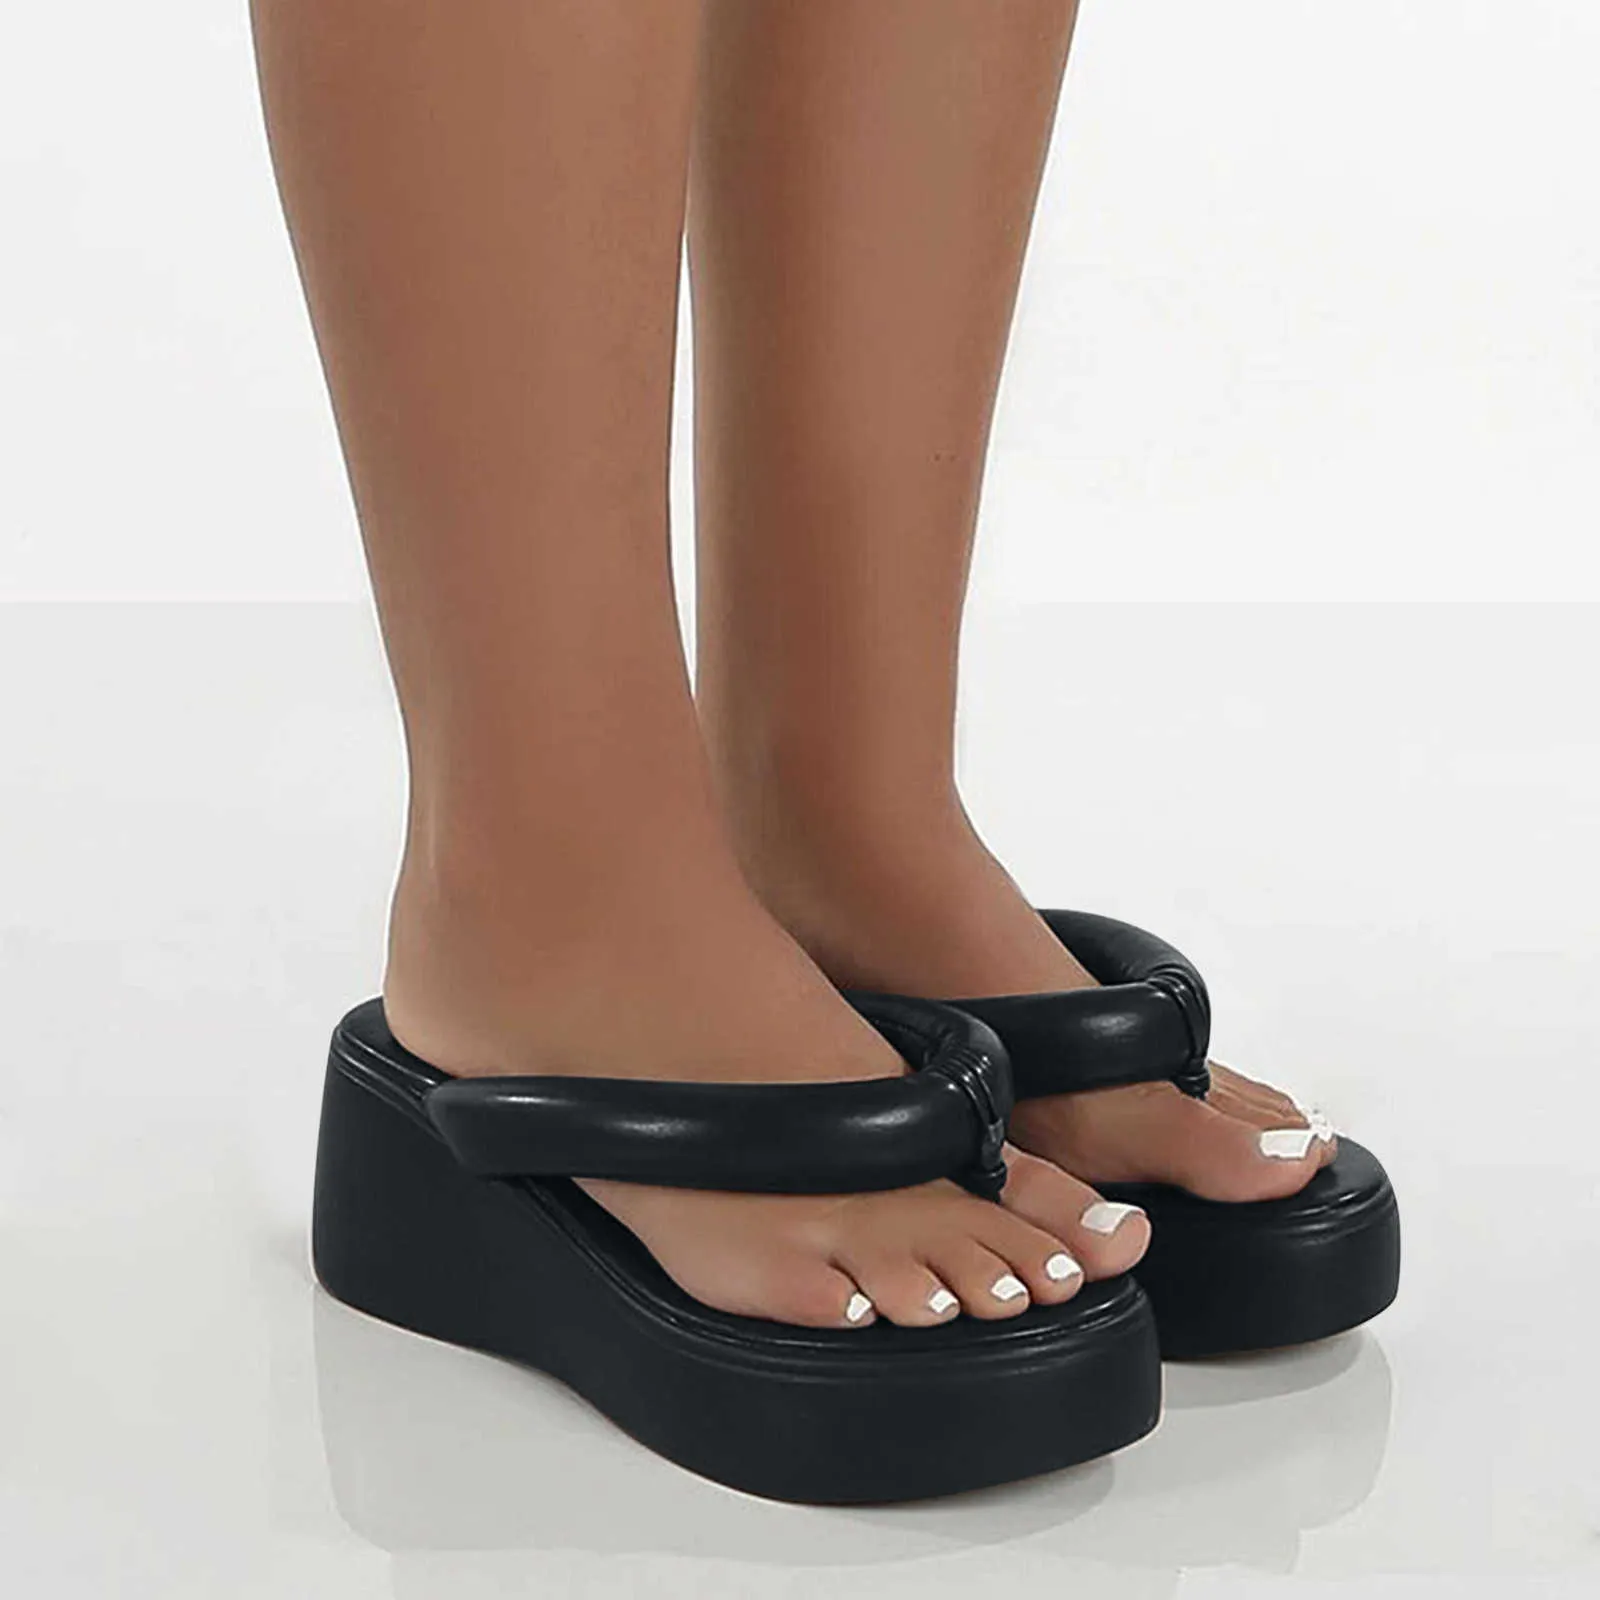 Femmes Fashion Pantoufles Super High Heels Plage Flip Flops Soft Eva Summer Shoes Chaussures Femme Diapositives 1 Sandales pour femmes Y0721